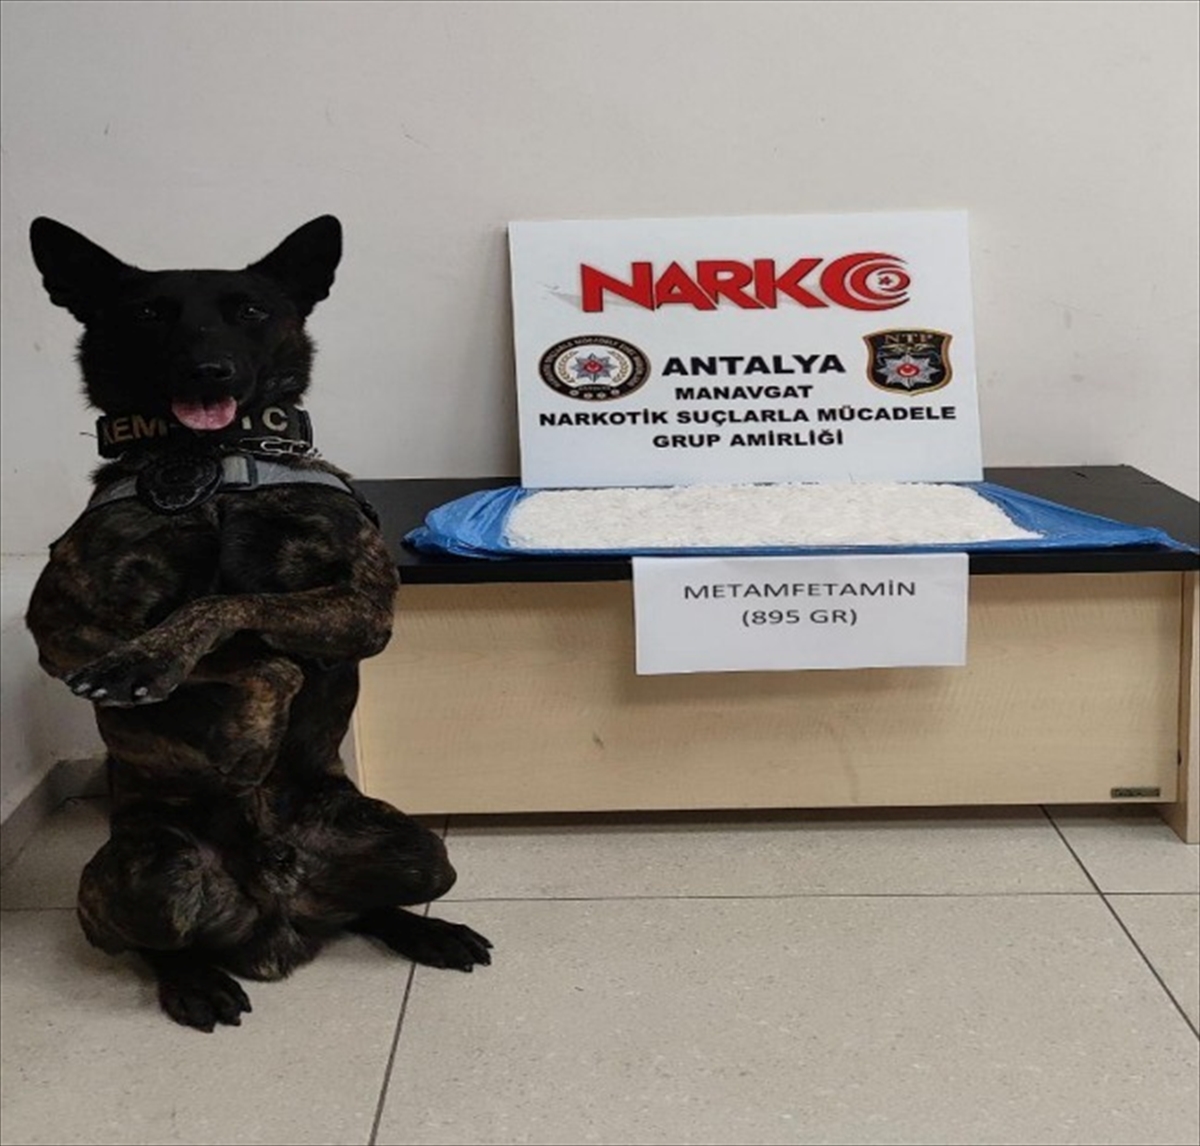 Antalya'da narkotik arama köpeği “Pars”ın uyuşturucu bulduğu araçtaki 3 kişi tutuklandı